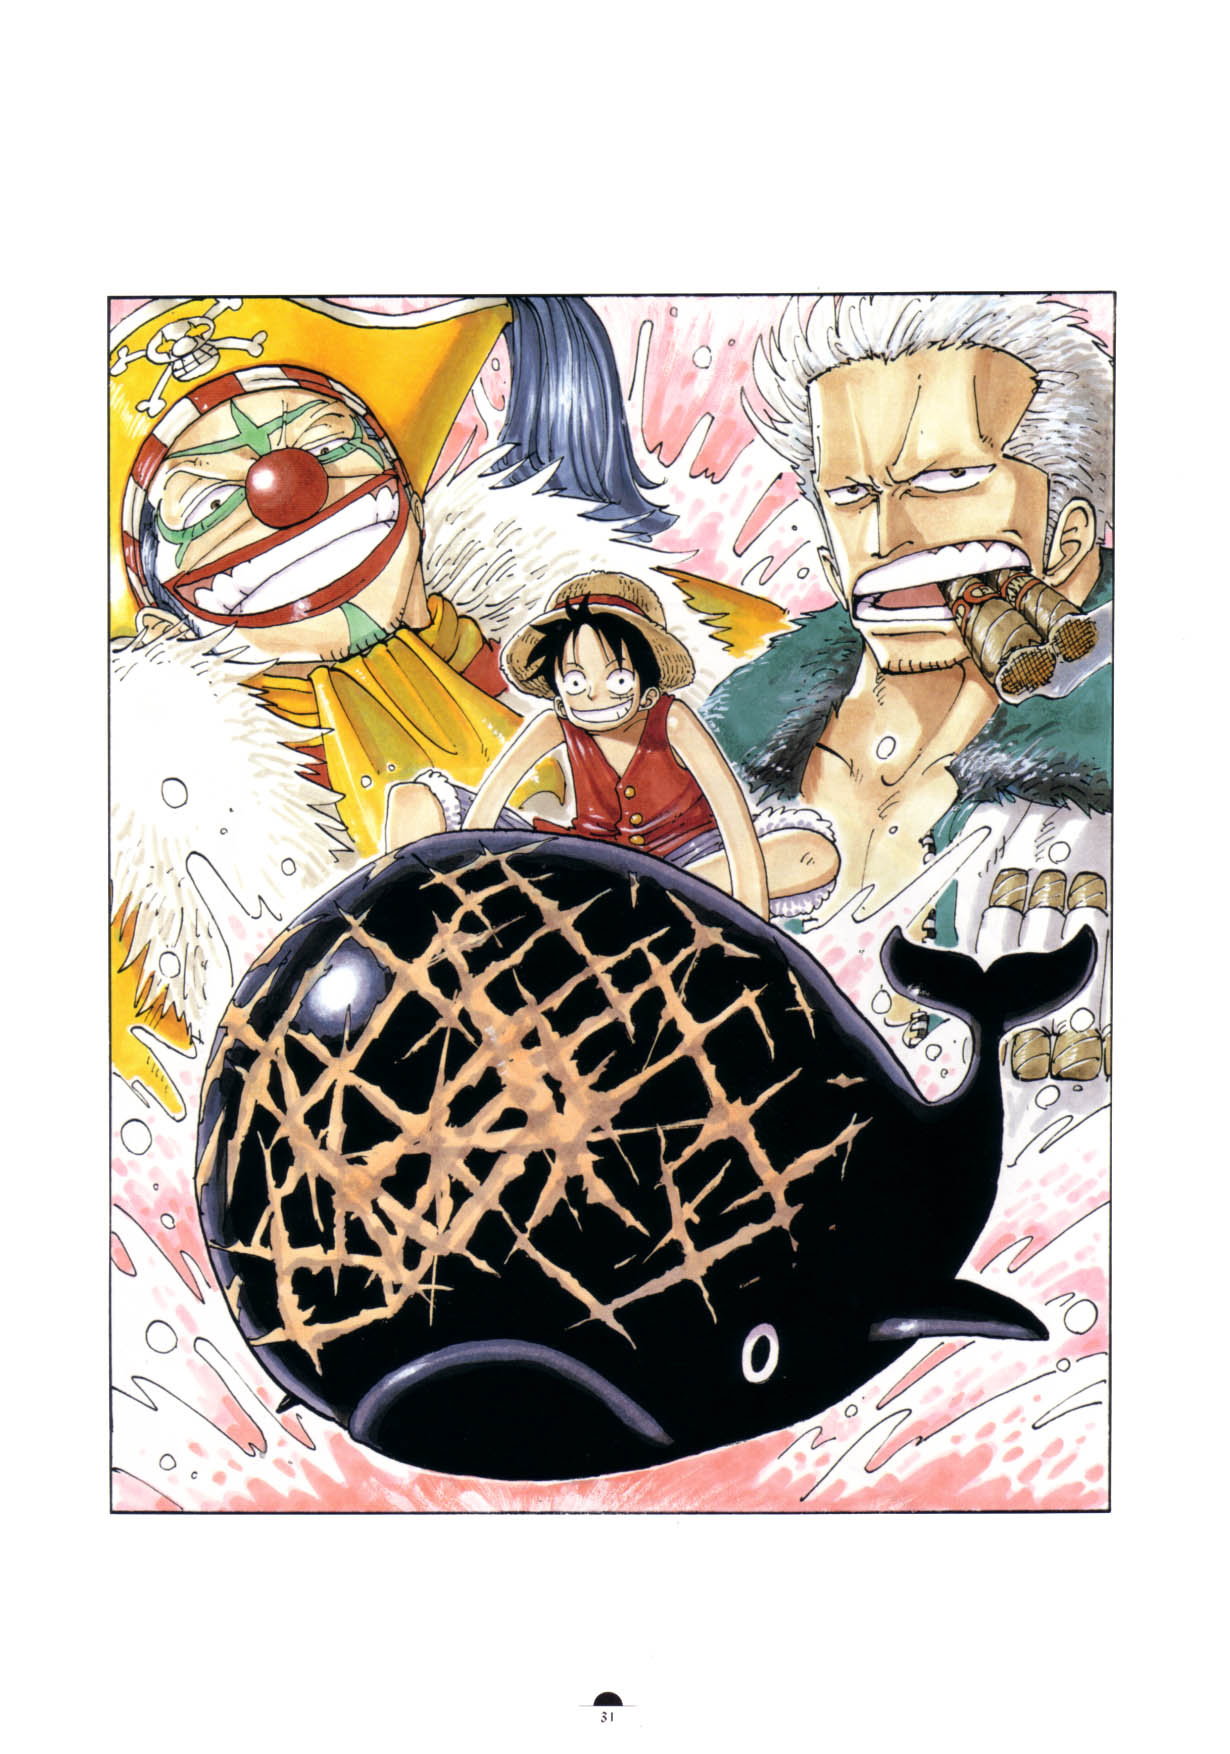 One Piece (Manga), One Piece Wiki